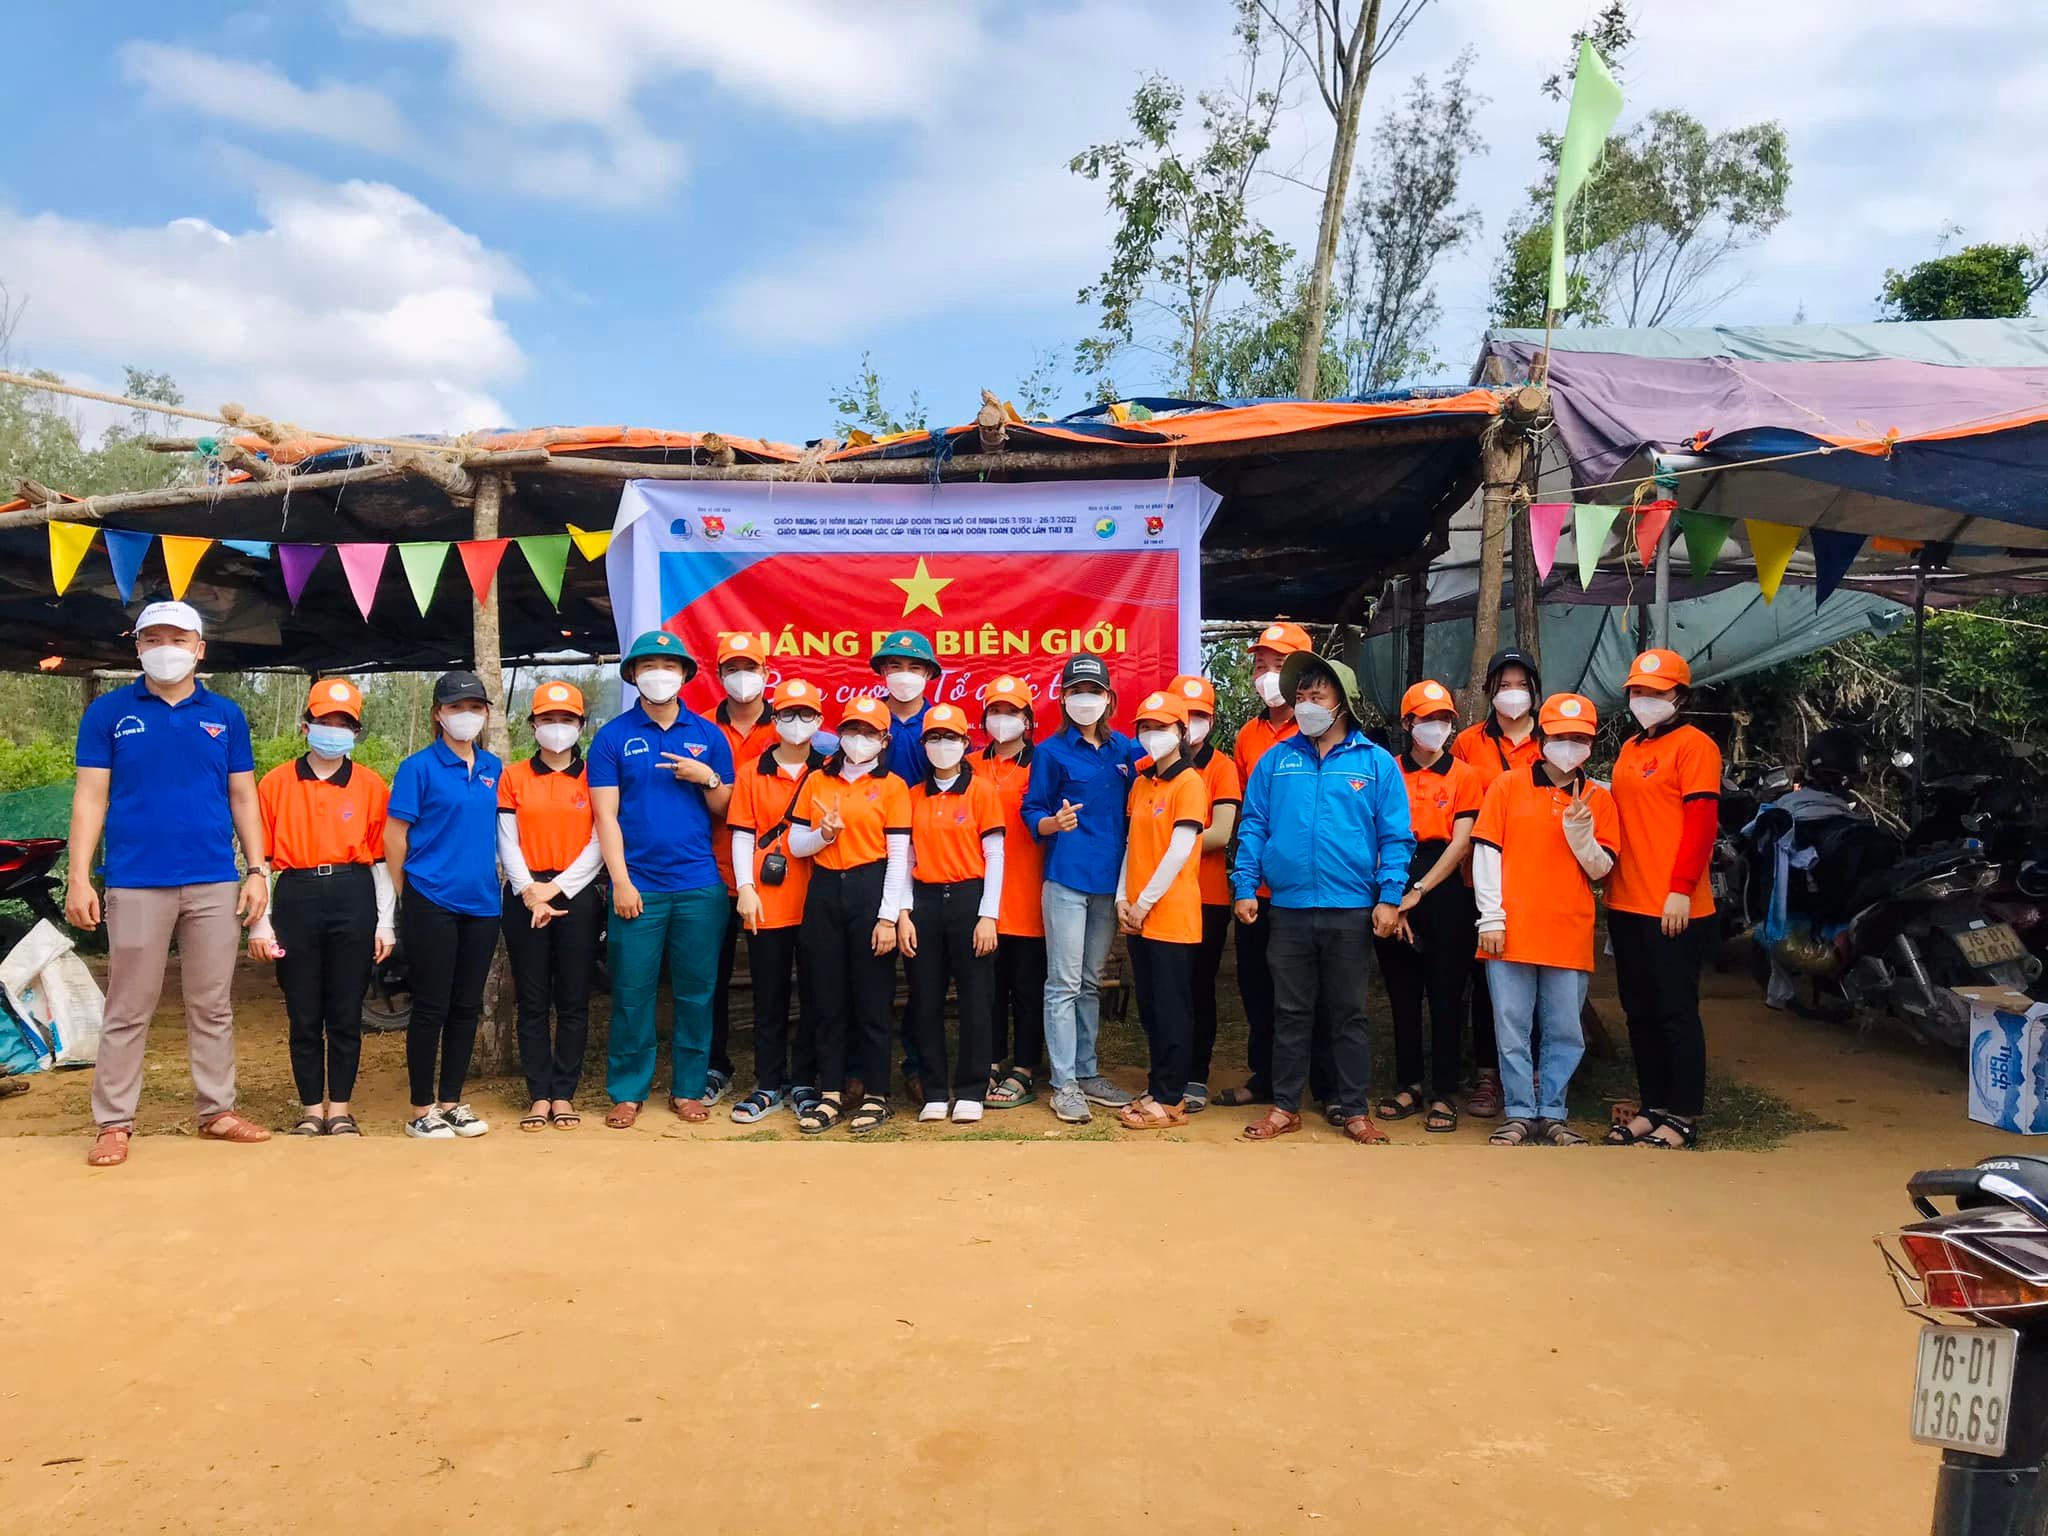 Thành phố Quảng Ngãi chỉ đạo cơ sở tổ chức Chương trình “Tháng Ba biên giới”, hưởng ứng Ngày cao điểm chung tay xây dựng nông thôn do Ban Bí thư Trung ương Đoàn phát động.